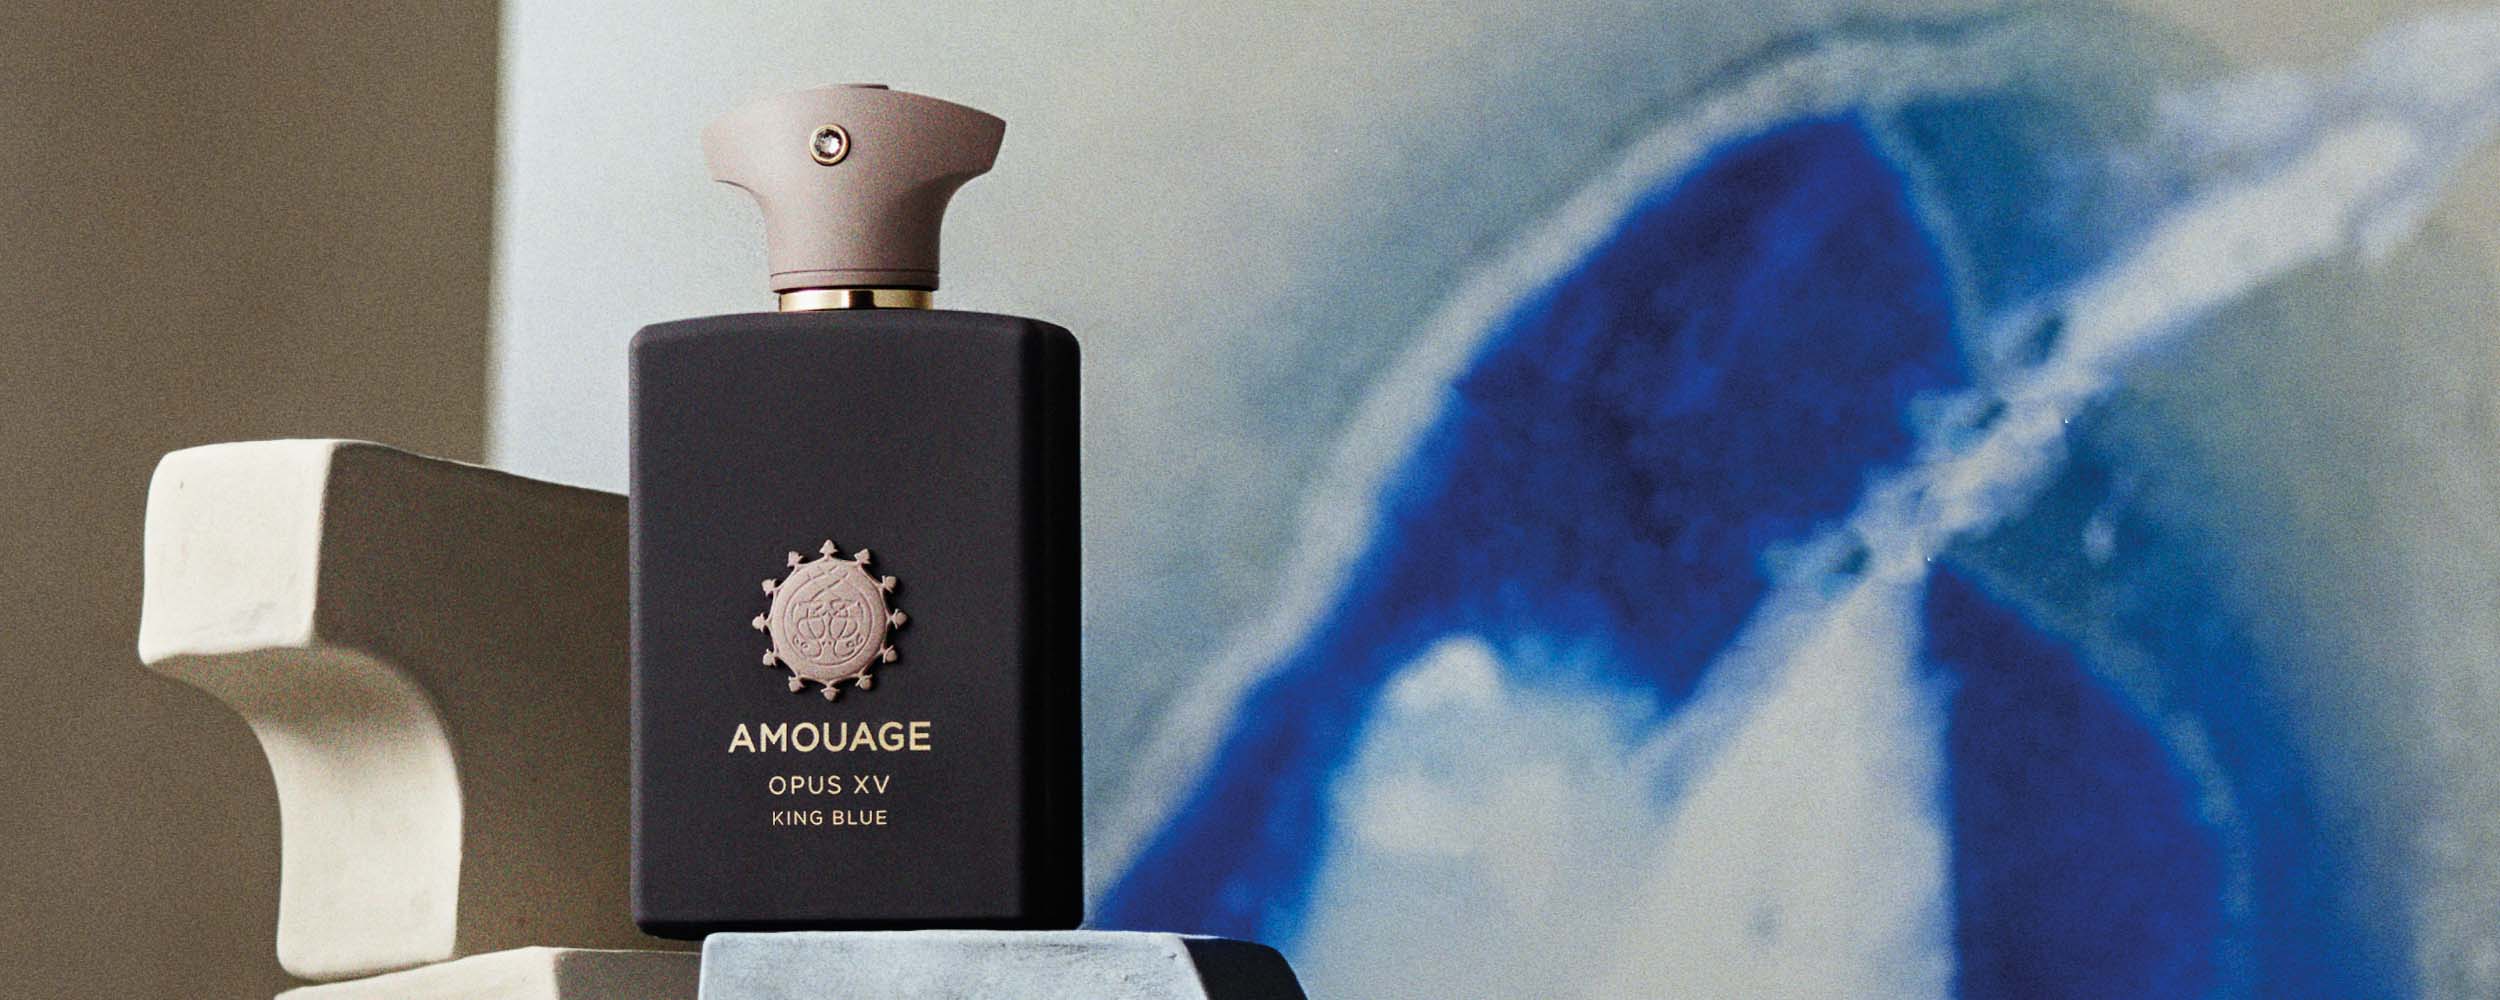 Amouage Opus XV King Blue Eau de Parfum